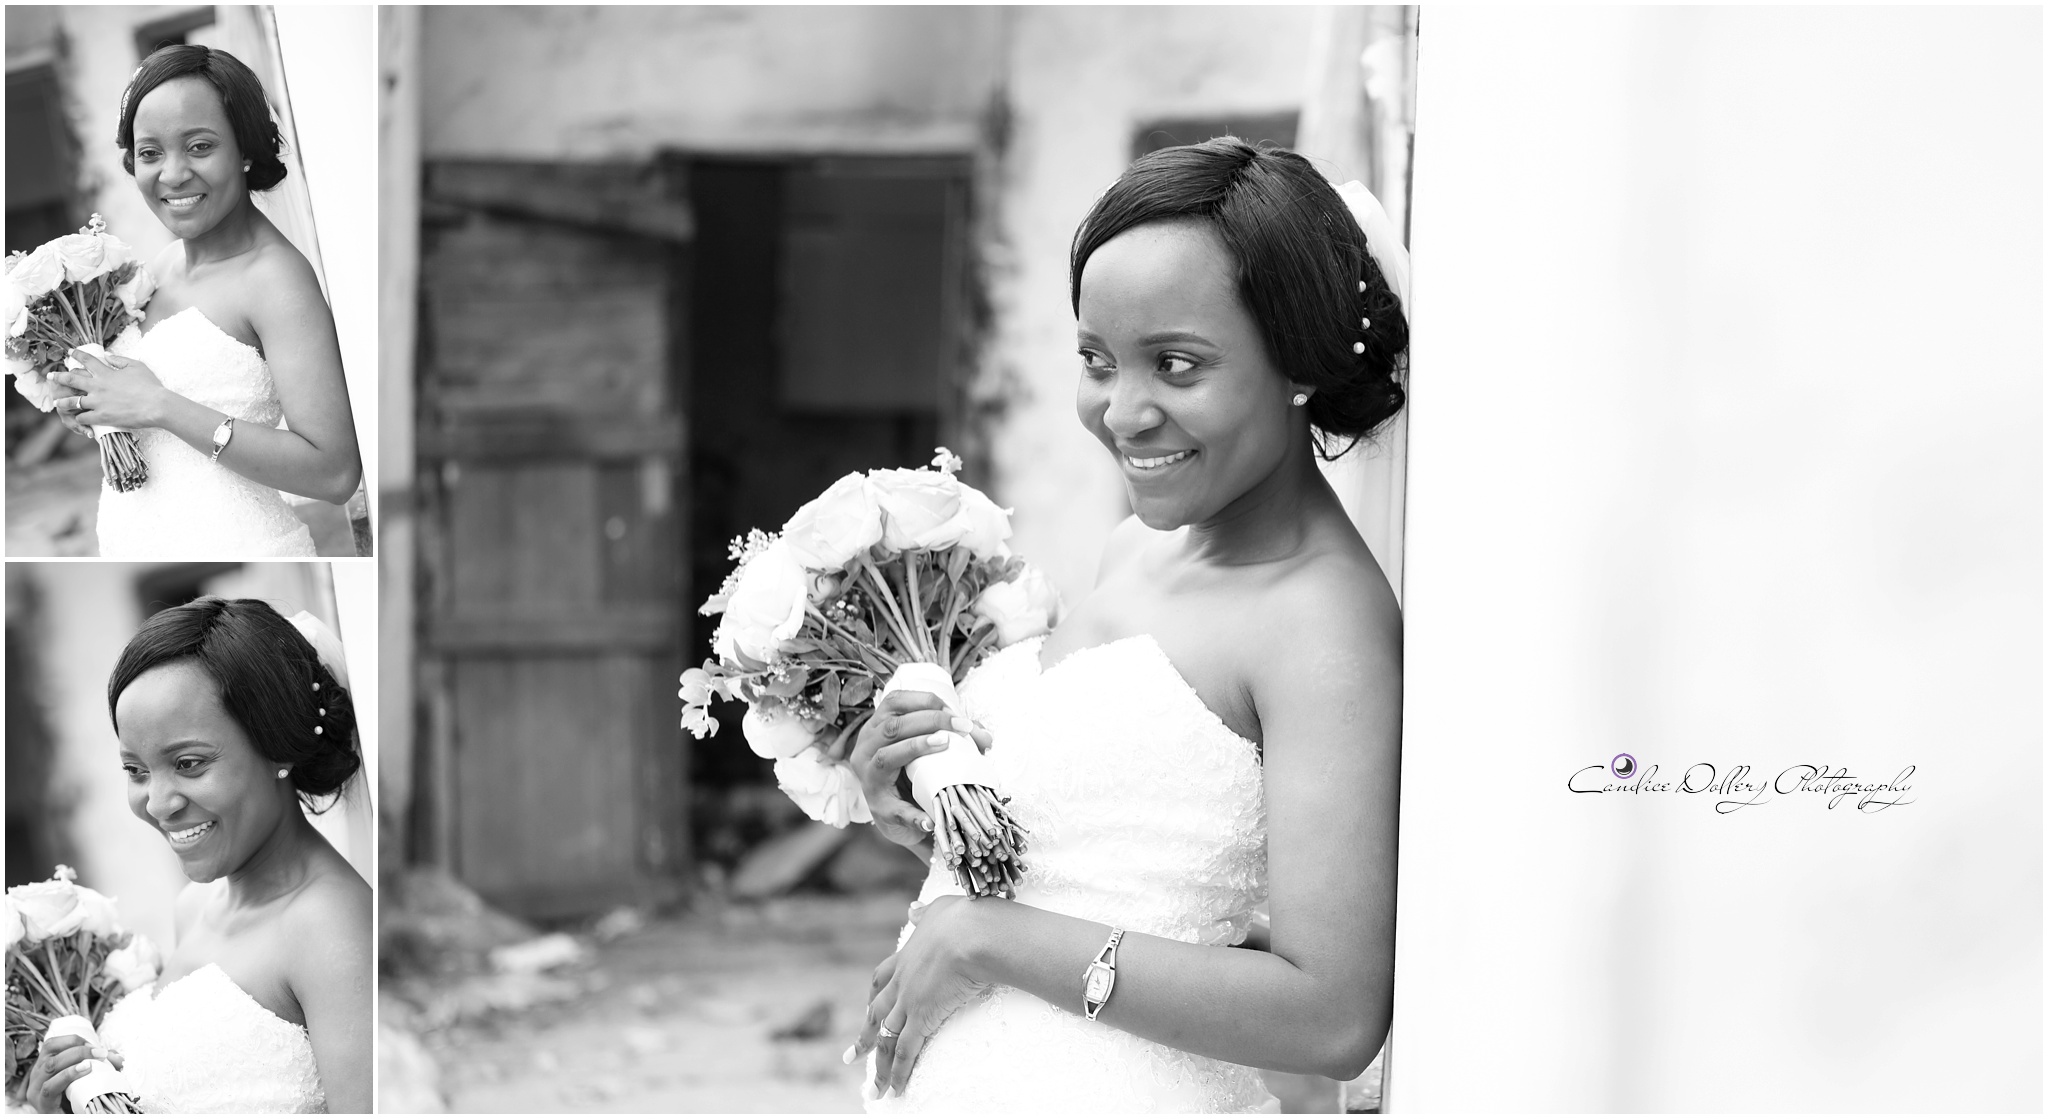 Masivuye & Khuselo's Wedding - Candice Dollery Photography_7288